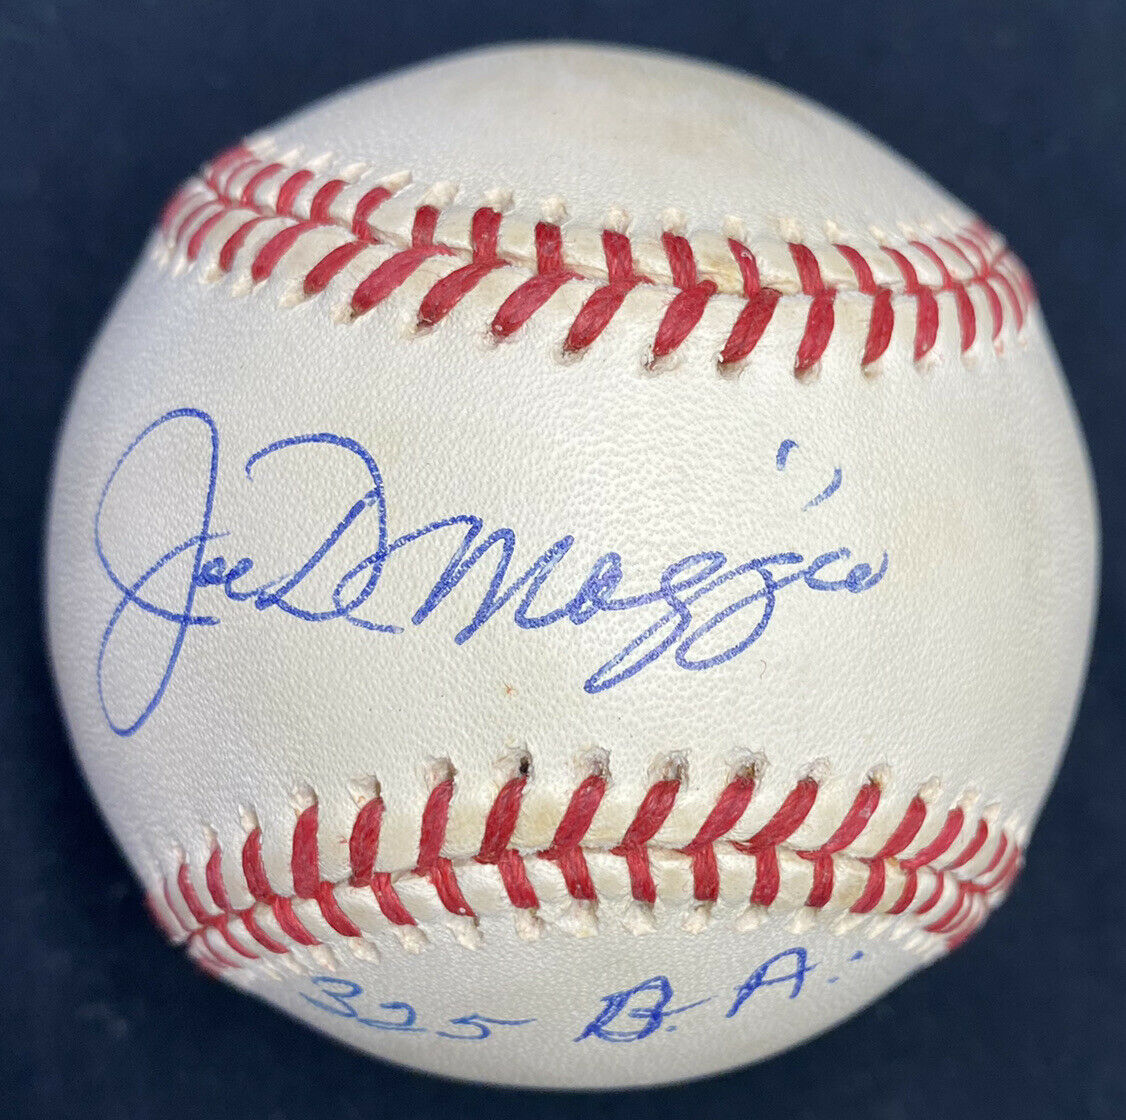 Joe DiMaggio .325 BA Signed Baseball JSA LOA